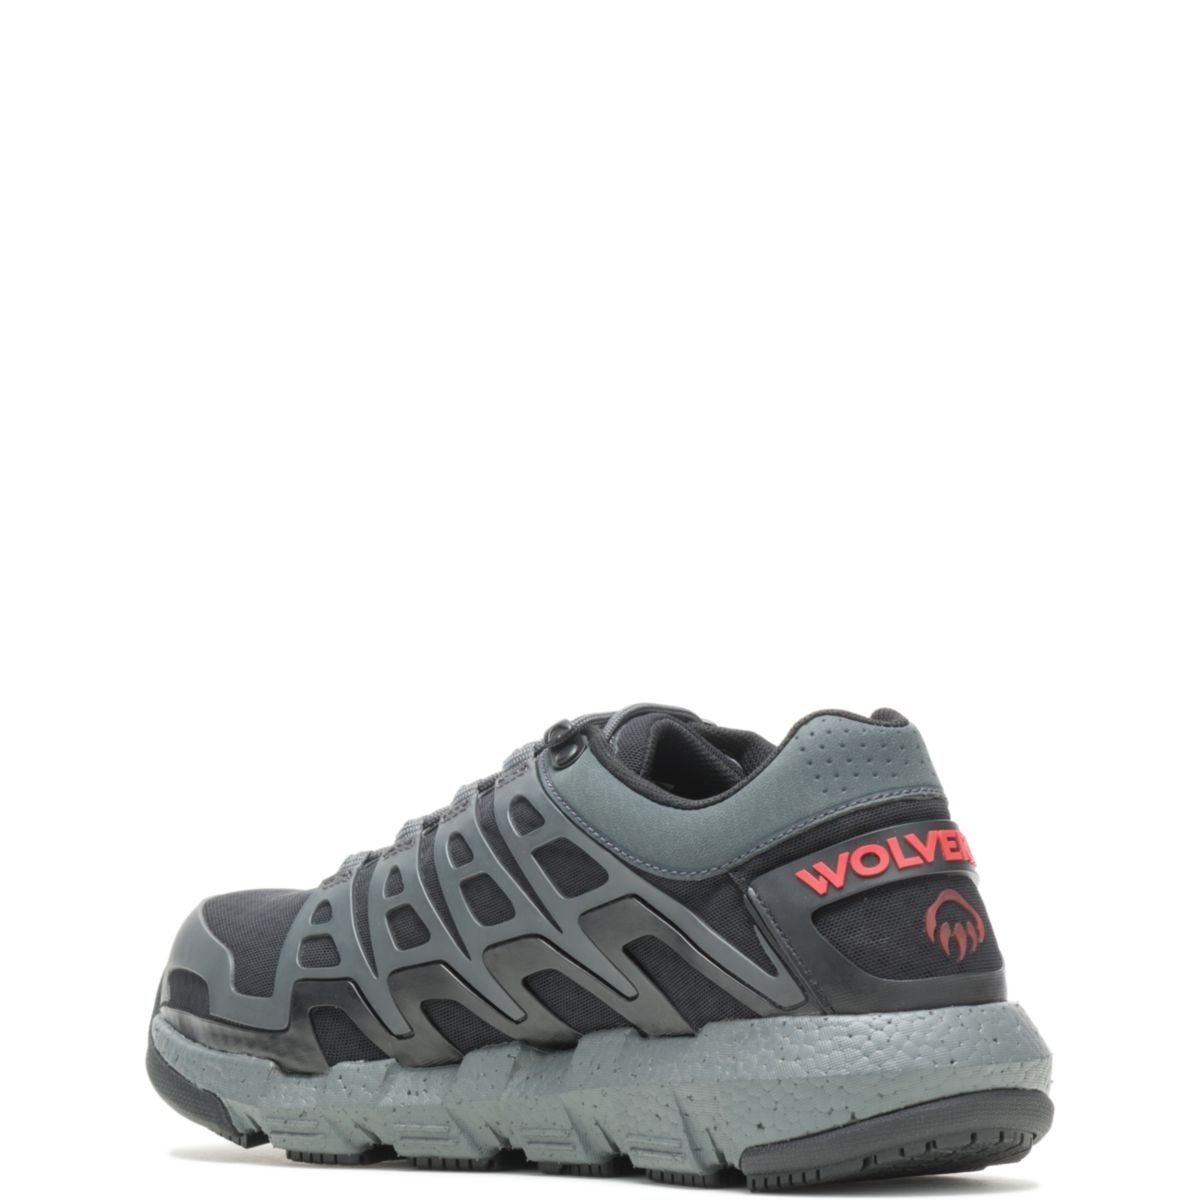 WOLVERINE Men's Rev Vent UltraSpringâ¢ DuraShocksÂ® CarbonMAXÂ® Composite Toe Work Shoe Charcoal - W211016 CHARCOAL - CHARCOAL, 9 X-Wide